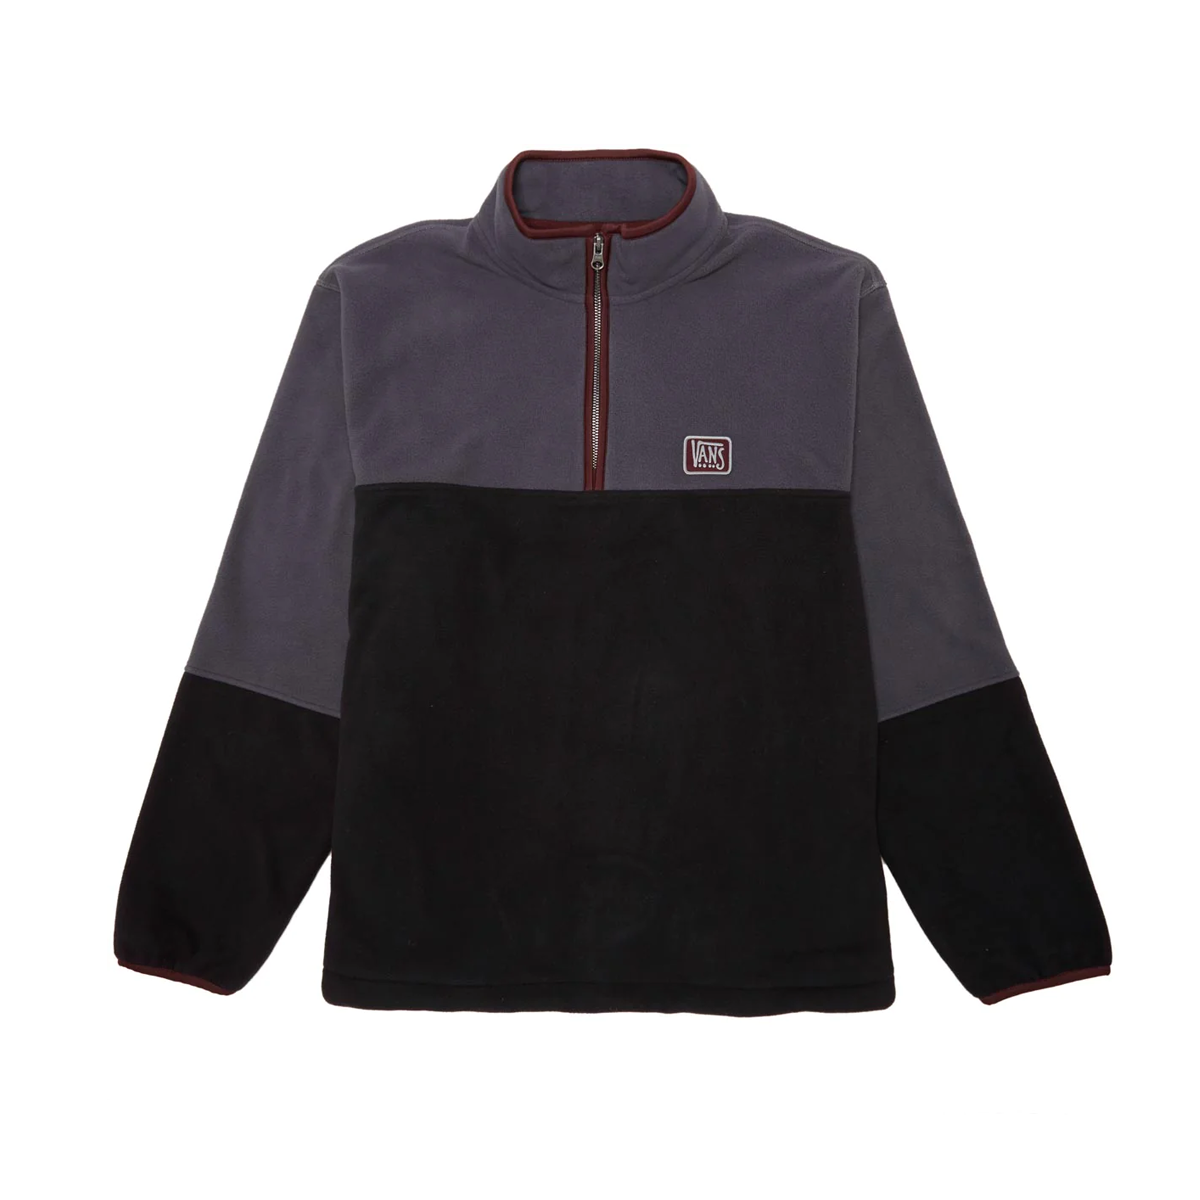 Vans Rowan Zorilla Half Zip Sweatshirt - Black/Grey